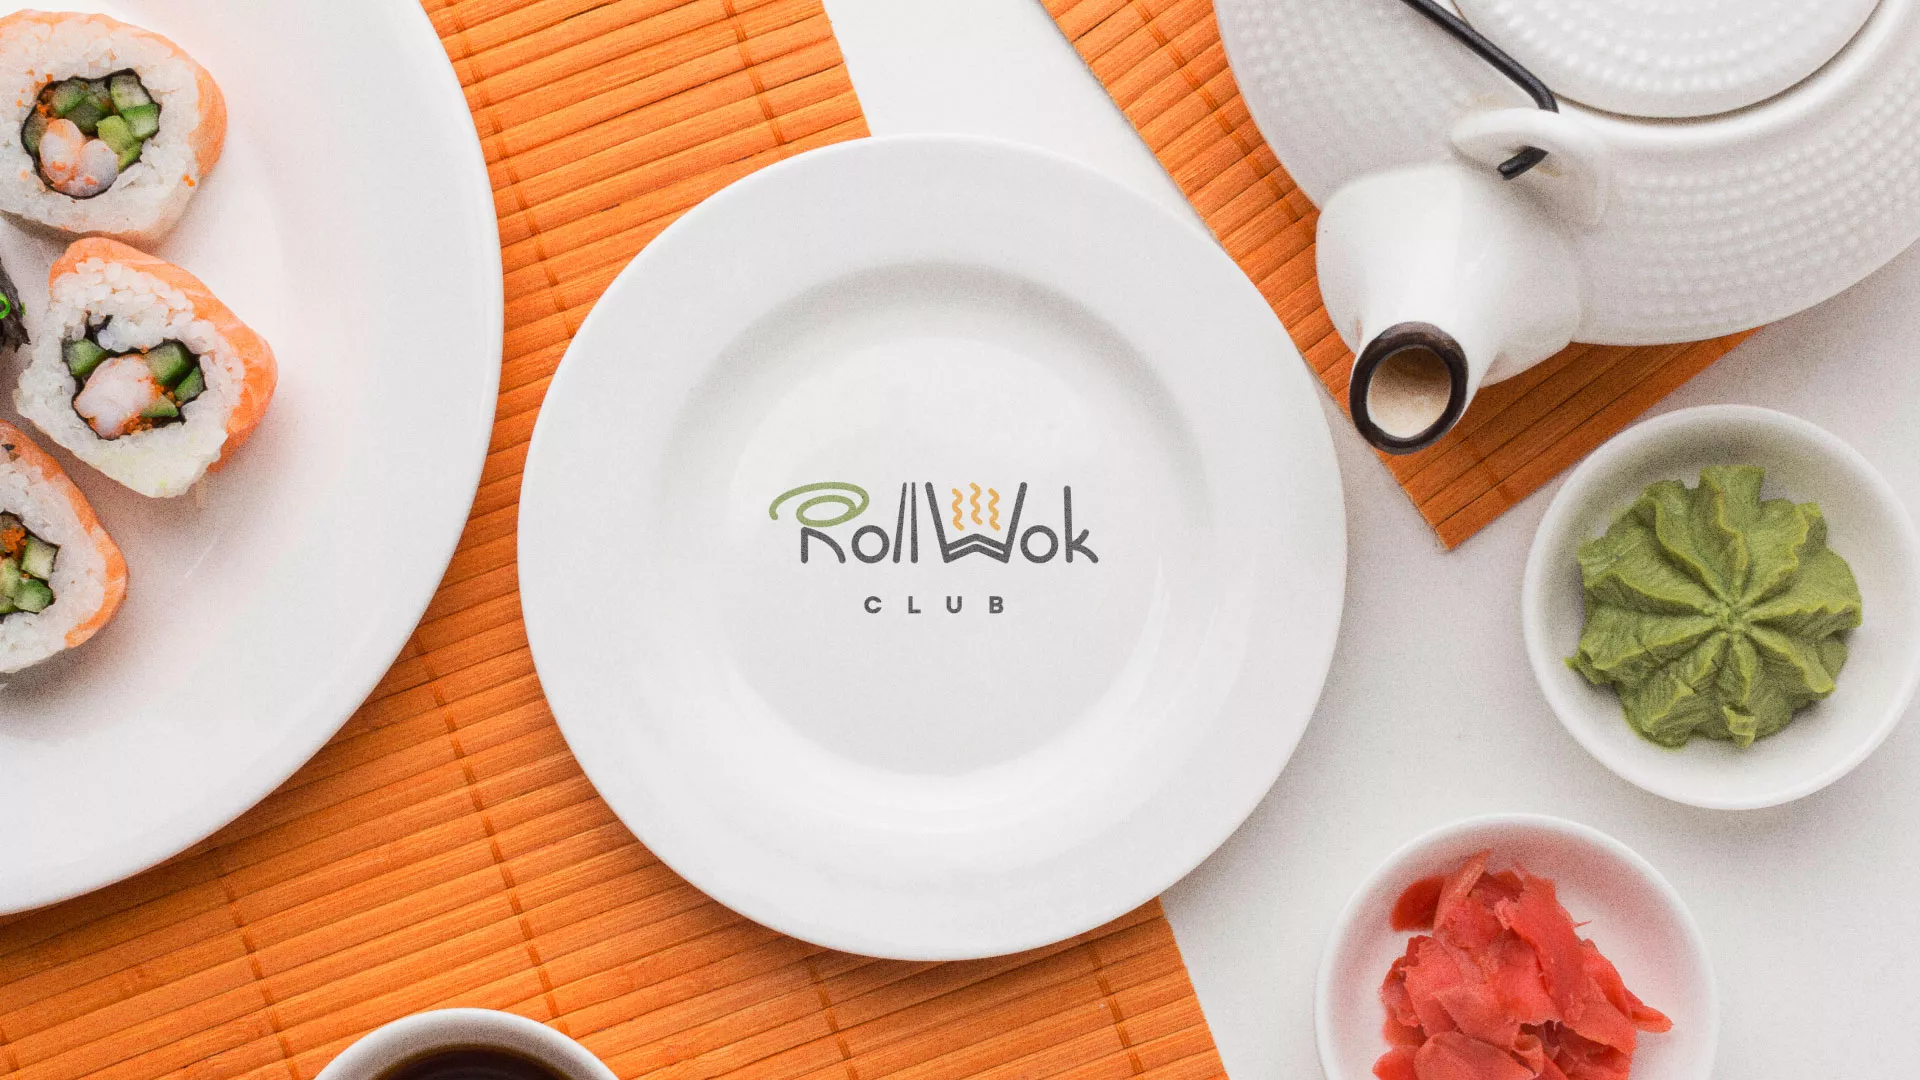 Разработка логотипа и фирменного стиля суши-бара «Roll Wok Club» в Емве